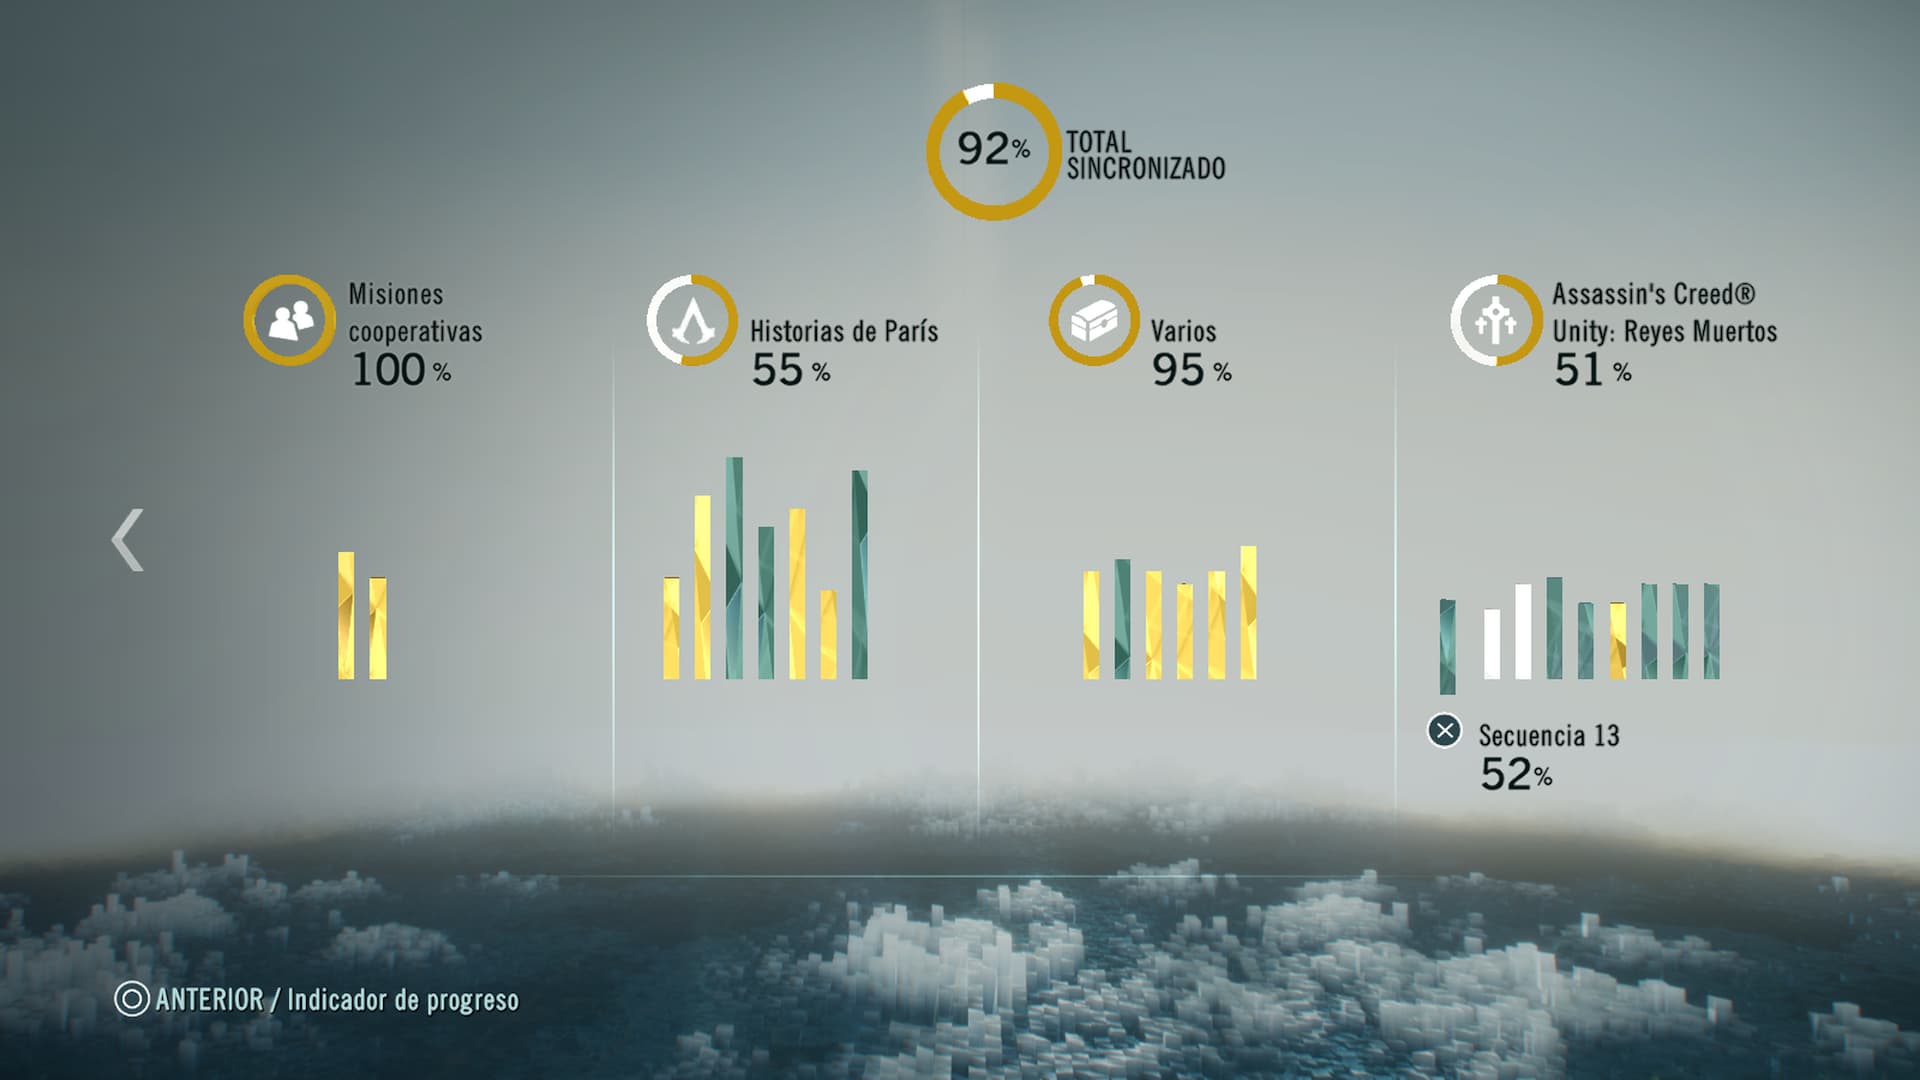 Assassin's Creed Unity Estadísticas finales de progreso